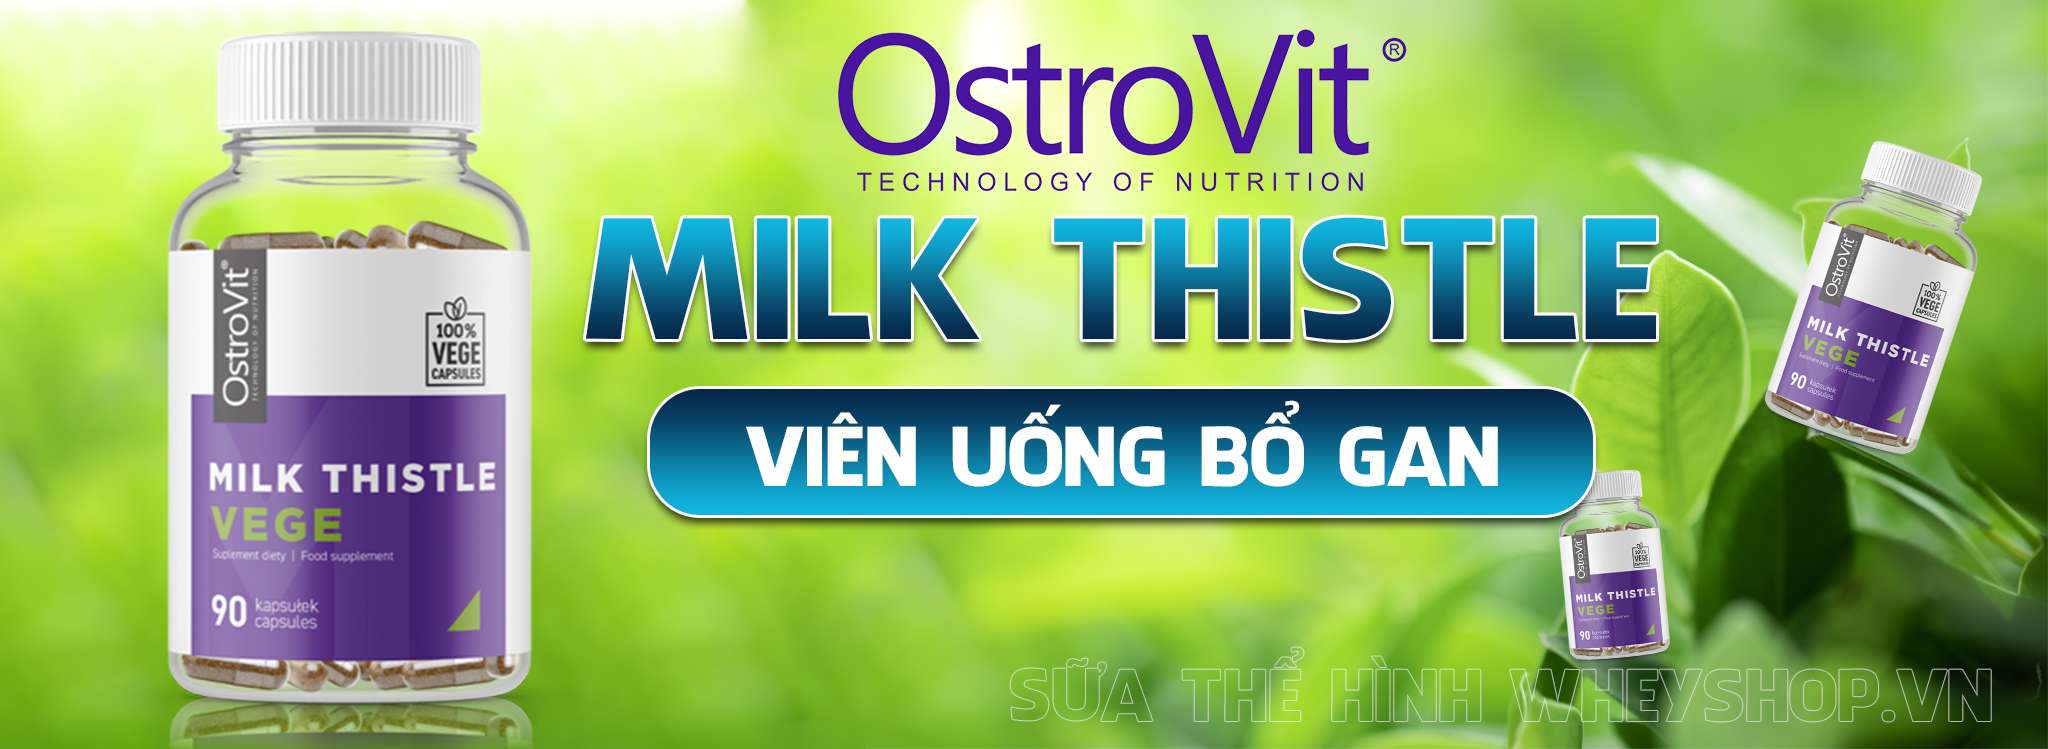 Viên uống bổ gan Ostrovit Milk Thistle có tốt không?